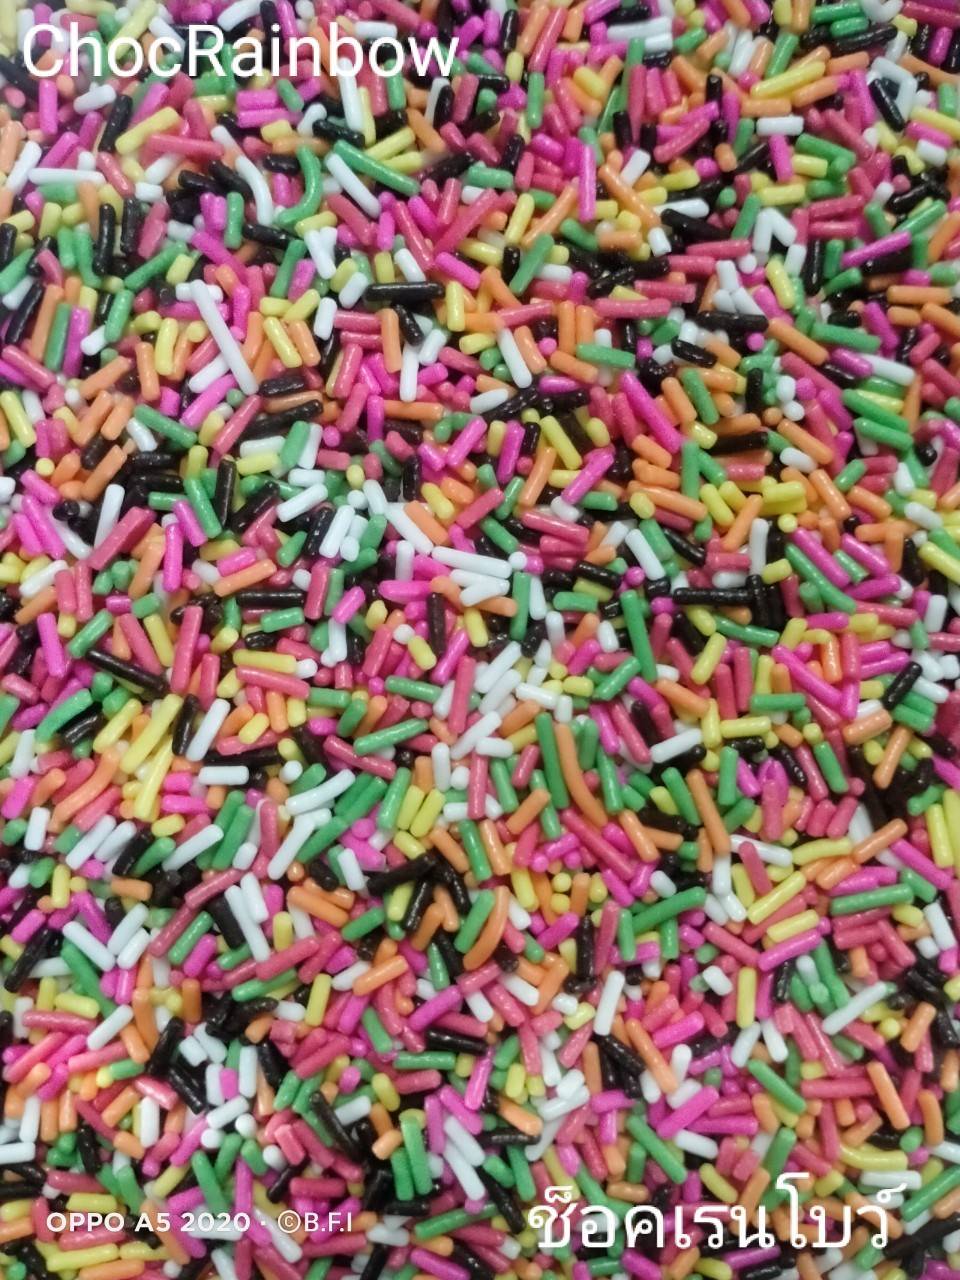 ท๊อปปิ้ง(Topping) เม็ดสีตกแต่ง โรยหน้า ขนมเค้ก ไอศกรีม เบเกอรี่ 1,000 กรัม แบบ Choc Rainbow